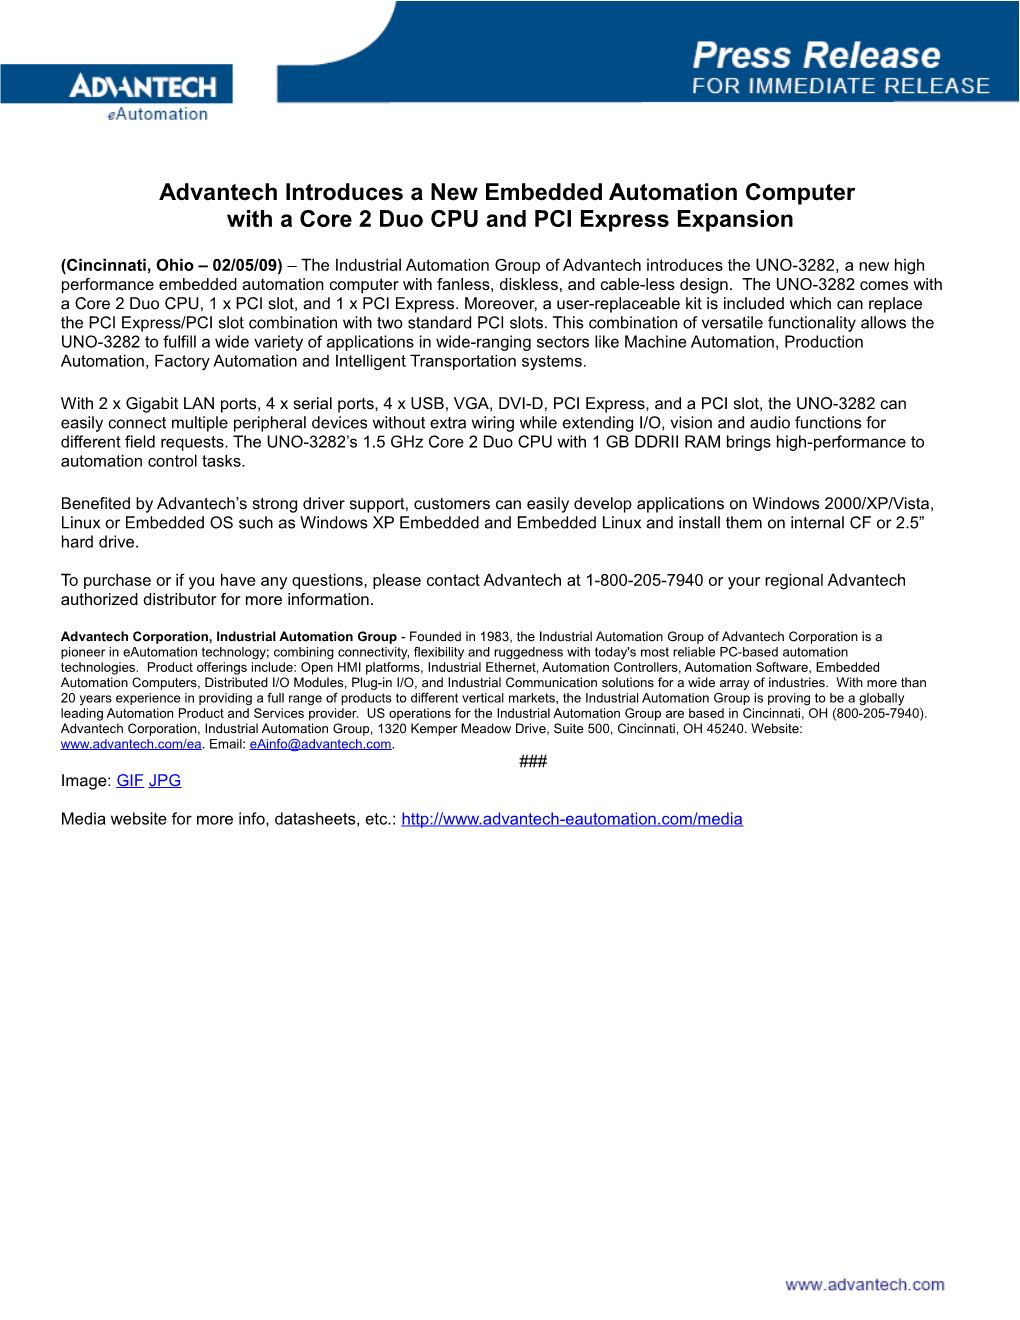 Advantech Industrial Automation Group s2